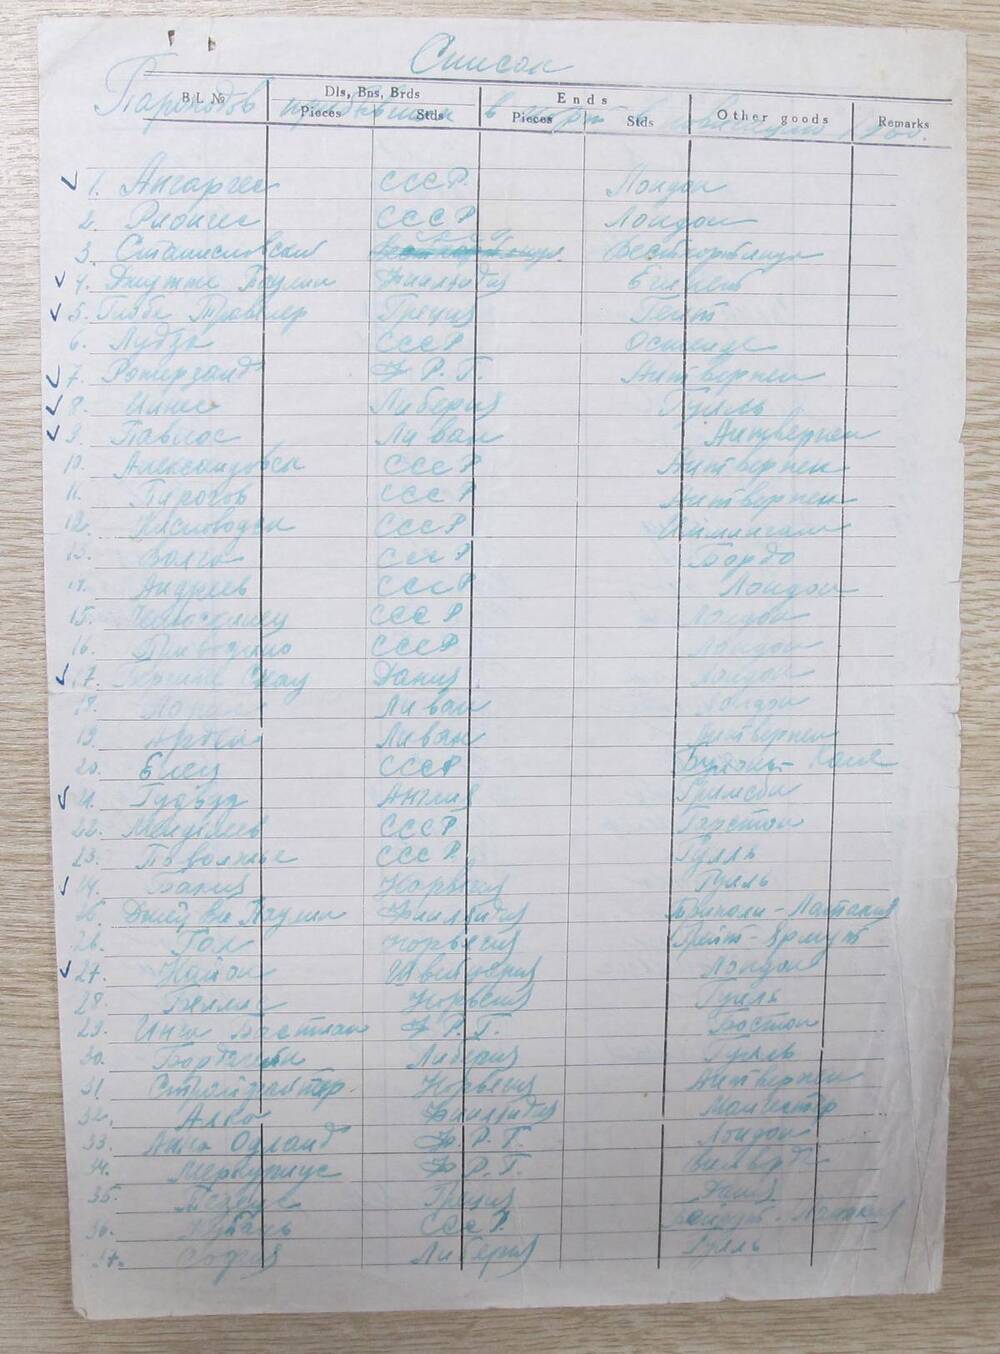 Список пароходов, прибывших в игарский порт в навигацию 1960 г.